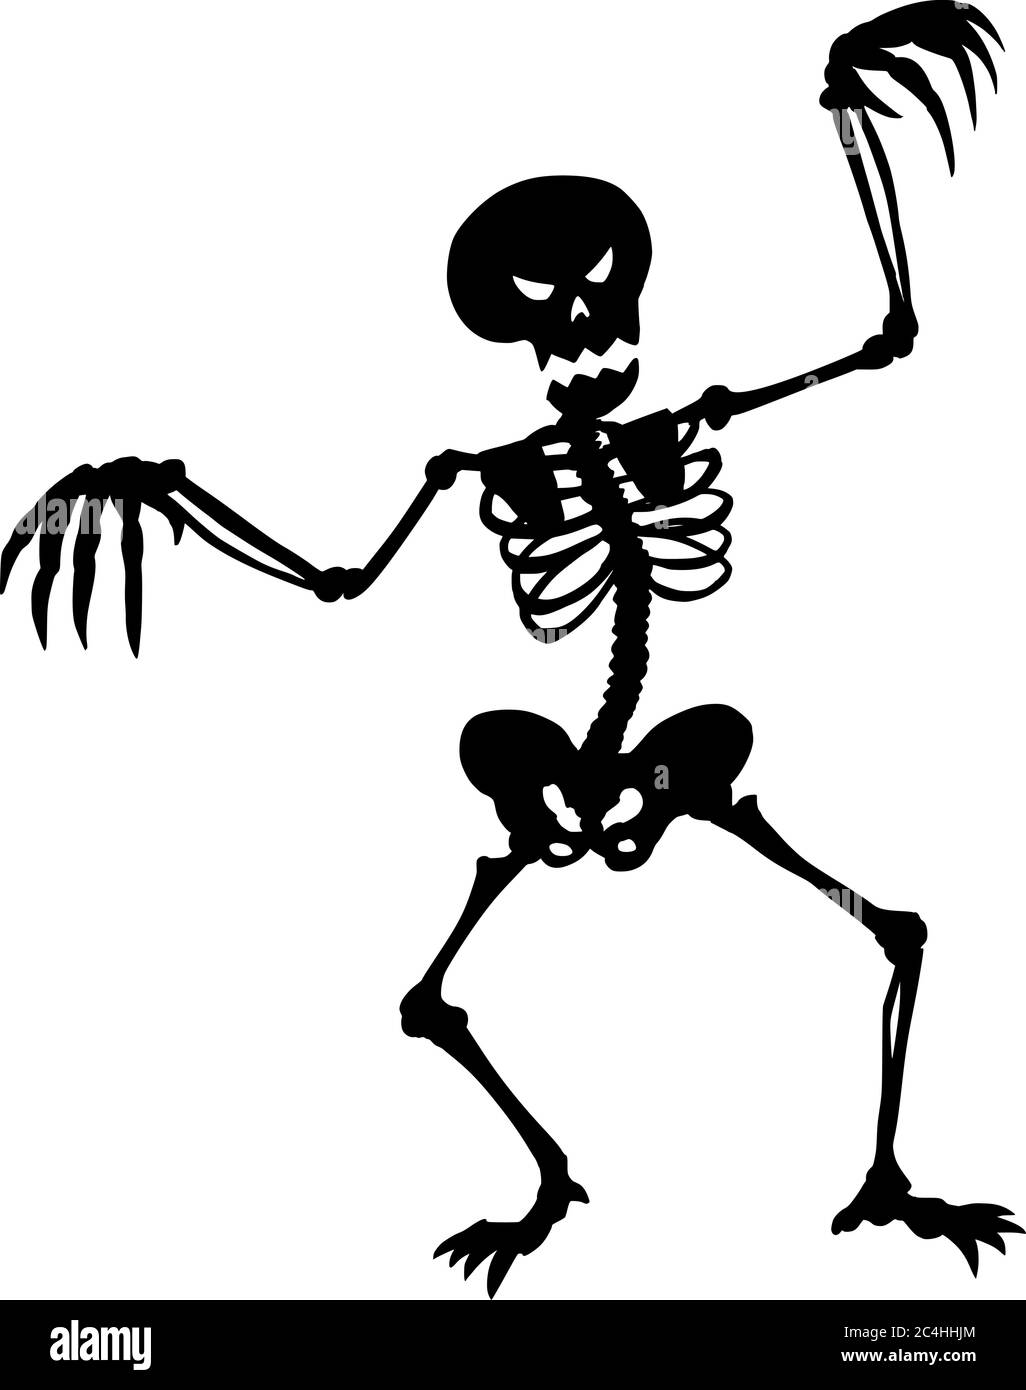 Vektor-Zeichnung Illustration der schwarzen Silhouette von gruseligen oder gruseligen Halloween-Skelett auf weißem Hintergrund. Stock Vektor